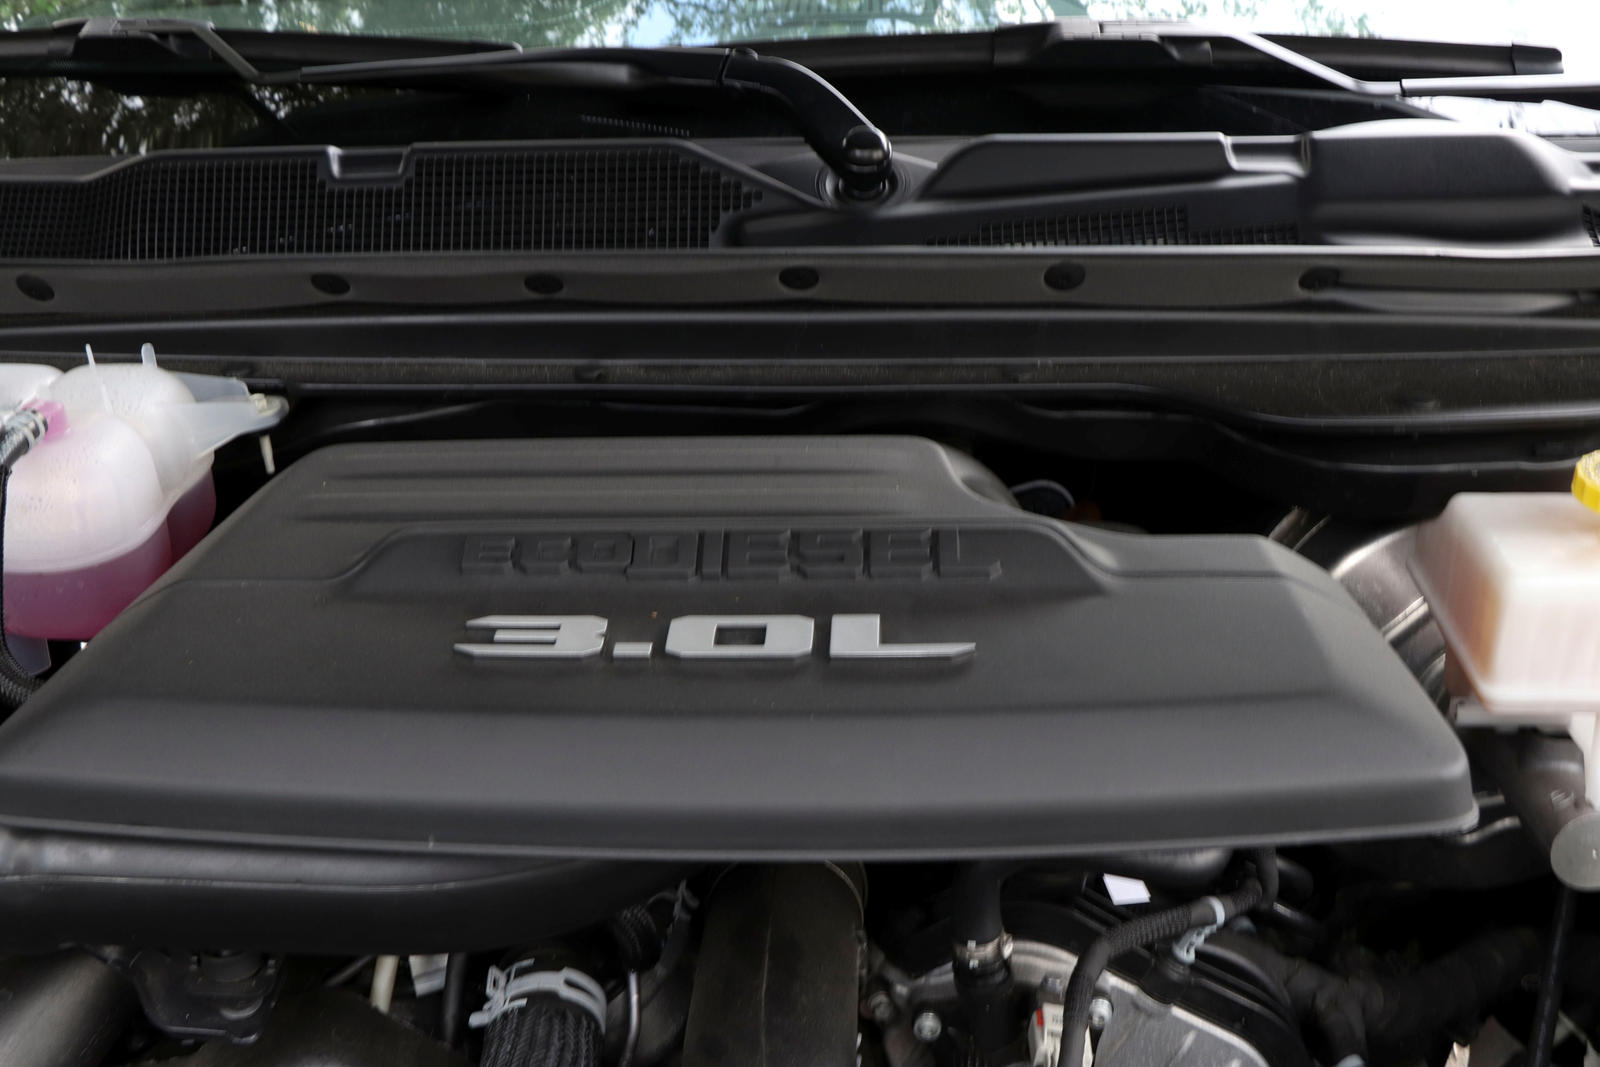 Под его капотом находится 3,0-литровый двигатель V6 EcoDiesel, который теперь имеет 260 лошадиных сил и 650 Нм крутящего момента. Он может буксировать до 5600 кг и проехать до 1600 км всего на одном баке дизельного топлива.